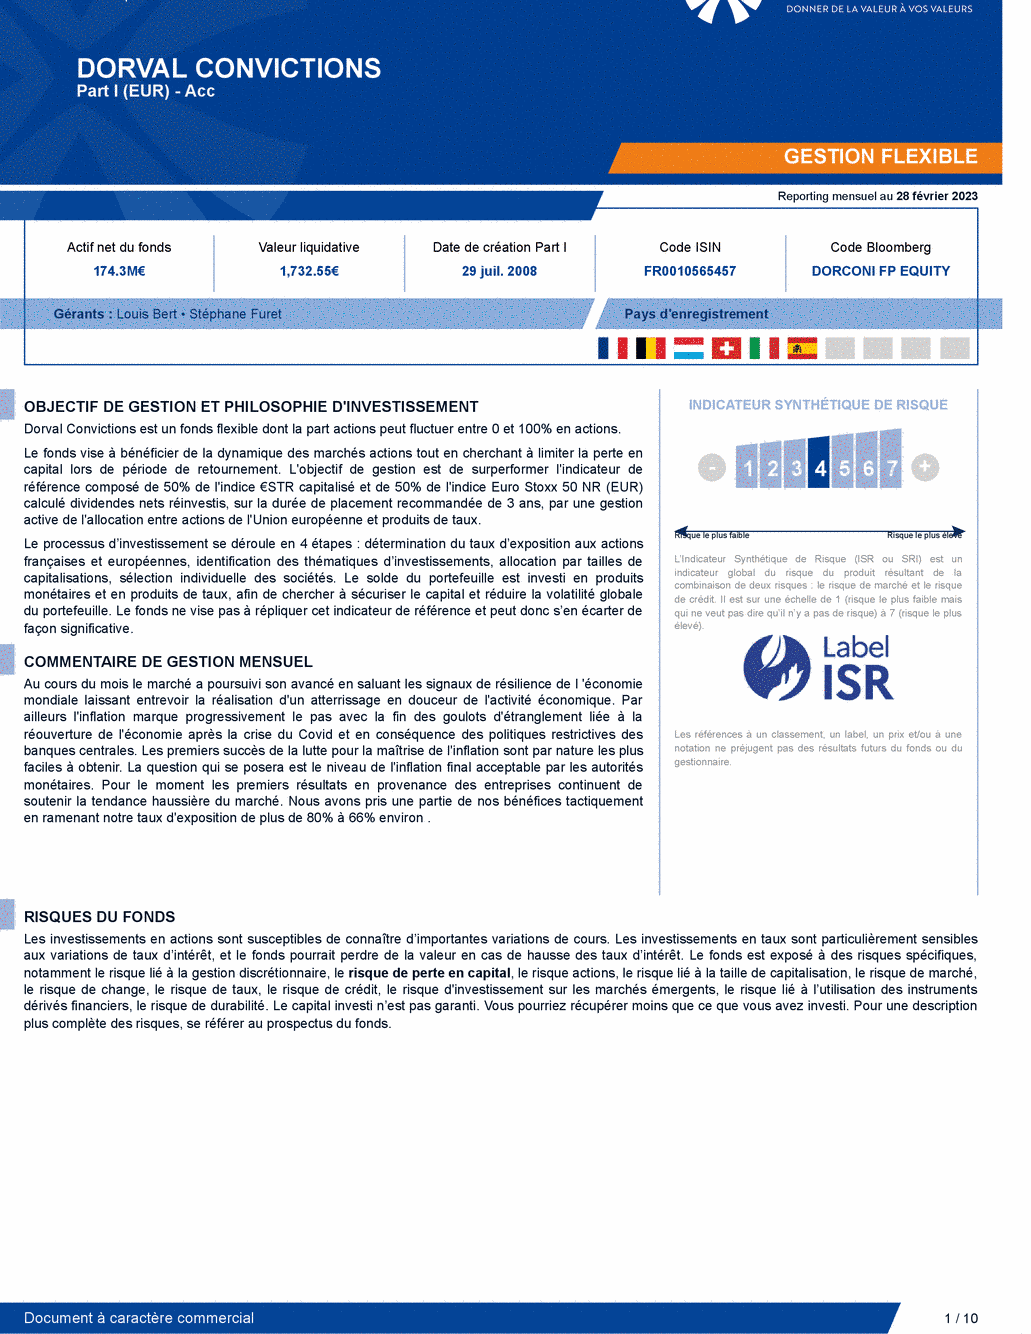 Reporting DORVAL CONVICTIONS I - 28/02/2023 - Français